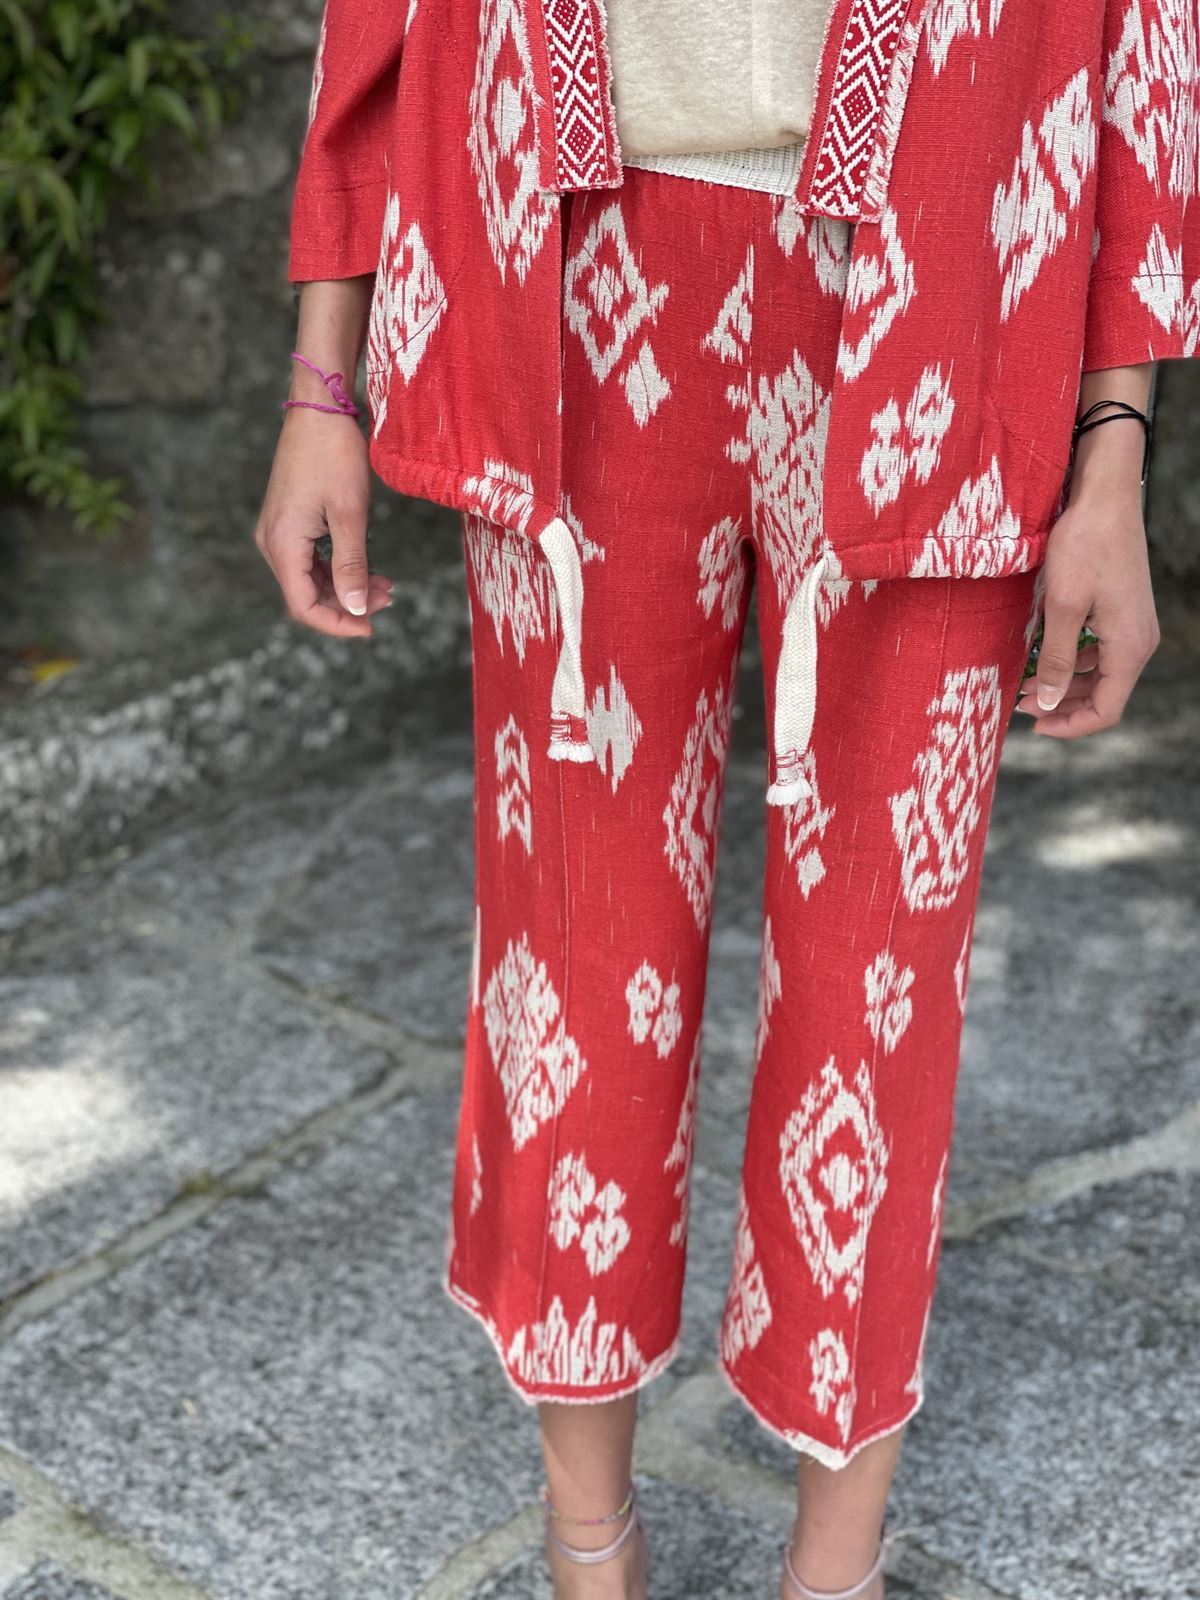 Pantalon Oky culotte etnico rojo - Imagen 2